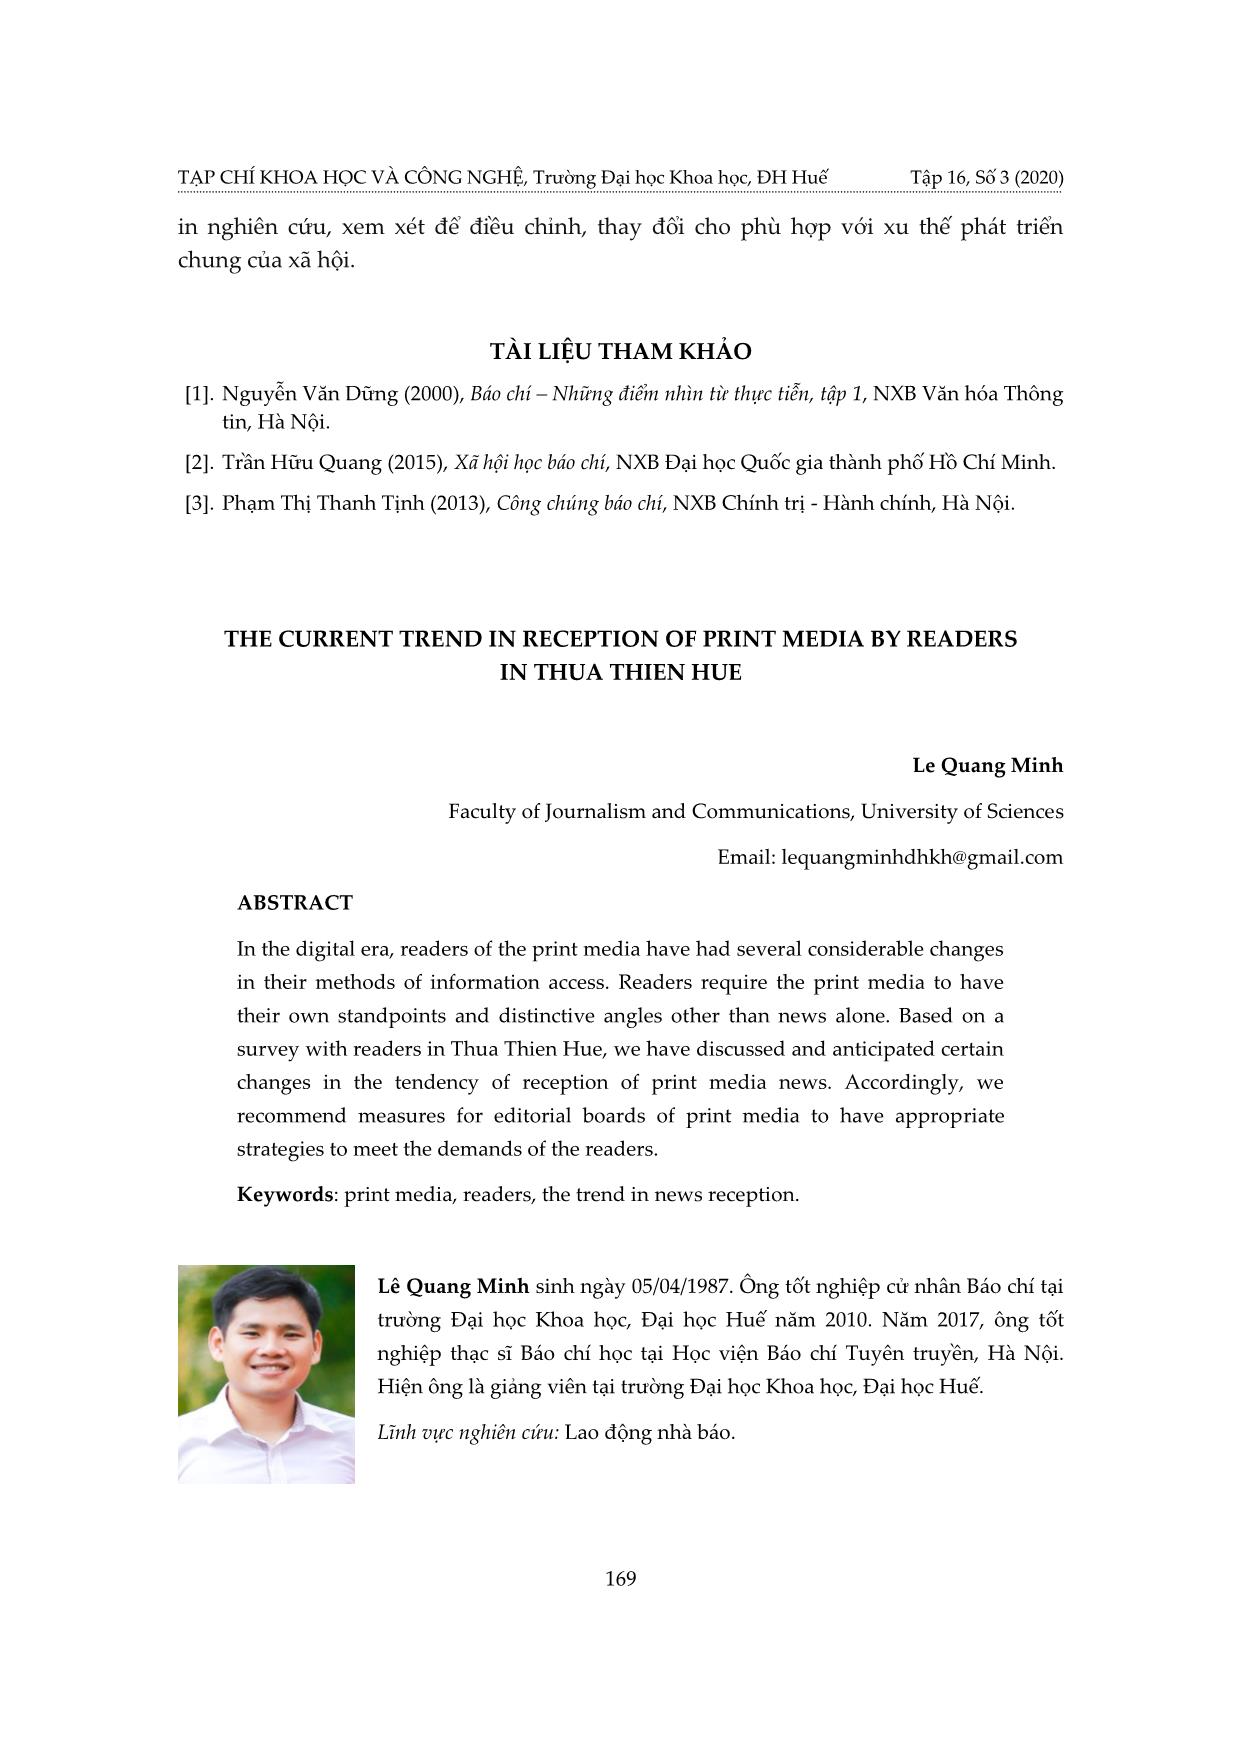 Xu hướng tiếp nhận sản phẩm báo in của công chúng tỉnh Thừa Thiên Huế hiện nay trang 9